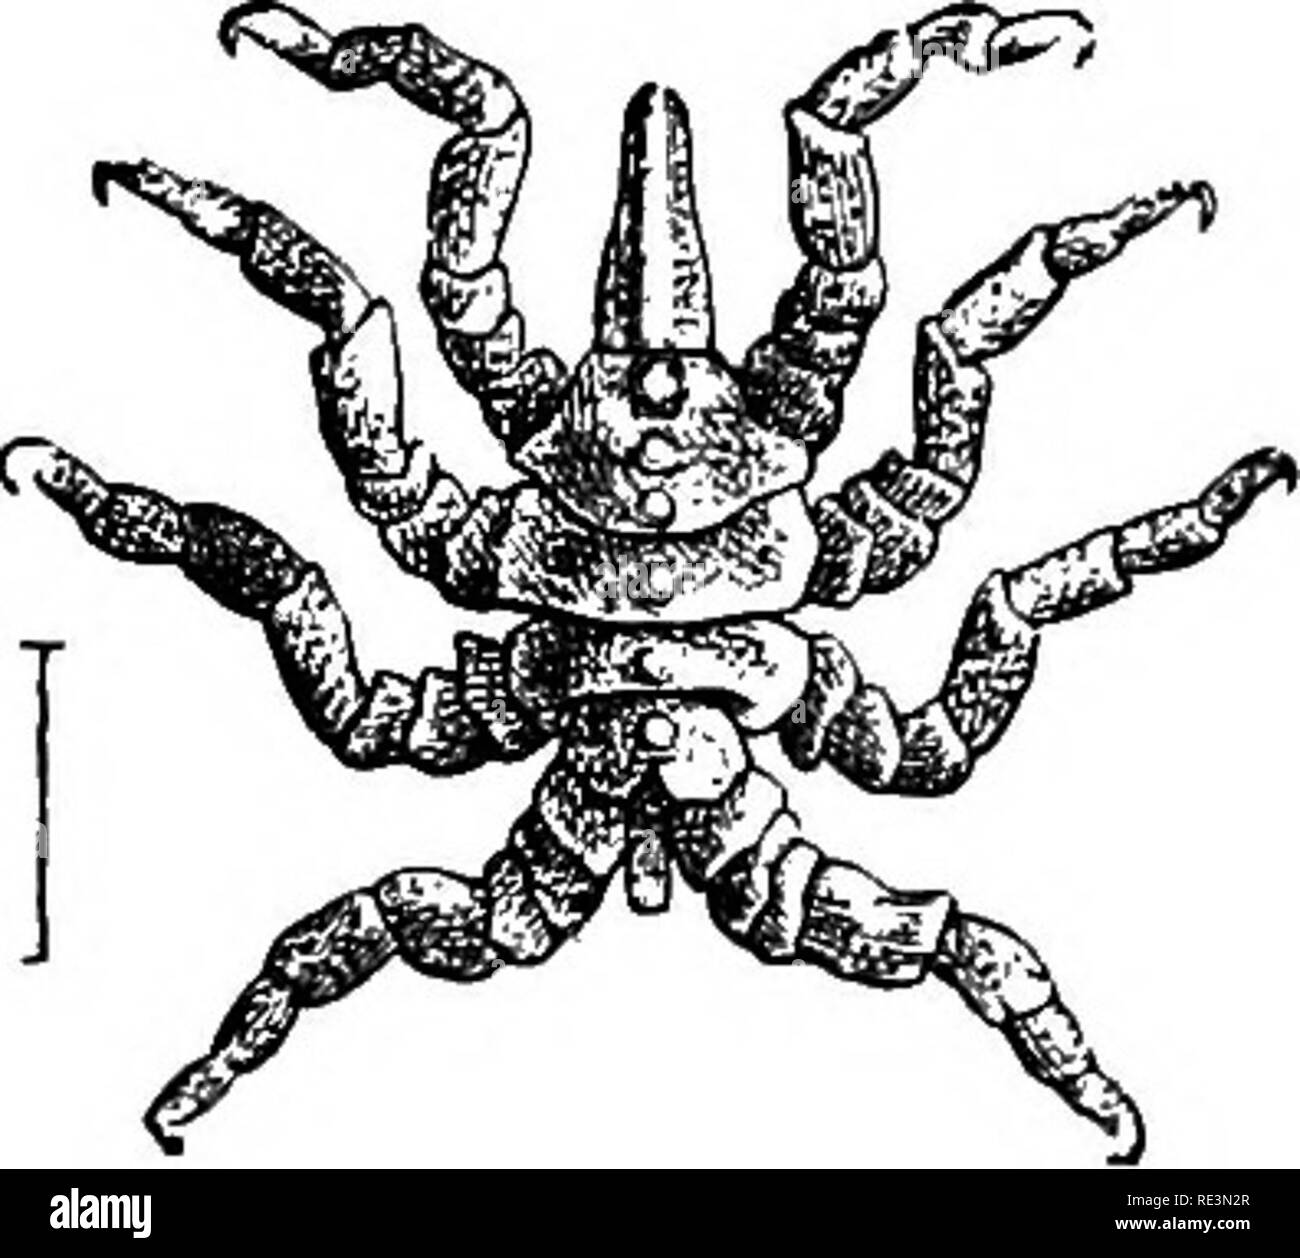 . Lehrbuch der Zoologie. Zoologie. 286 Arthropoda. Und im Menschen Mmself; wenn ein Organ, die solche Parasiten devoiu werden-ed durch einen Hund, sie wandern in die Nasenhöhle und ihrer Entwicklung abgeschlossen. Die Fycnogonidse, oder Krabbe - Spinnen, haben eine sehr rudimentäre Abdomen; Der vorderleib ist schmal und in vier Segmente unterteilt. Die Nahesten ist eine langgestreckte Schnauze - Kke Prozess zu bilden, die sich an der Spitze der Mund und cephalothoi-ax trägt vier Ocelli, ein paar chelicerse, die in der Regel eingezogen sind, und ein Paar von anteirniform Pédipalpes, obwohl diese beiden Paare der Gliedmaßen kann nicht vorhanden sein; und auch f Stockfoto